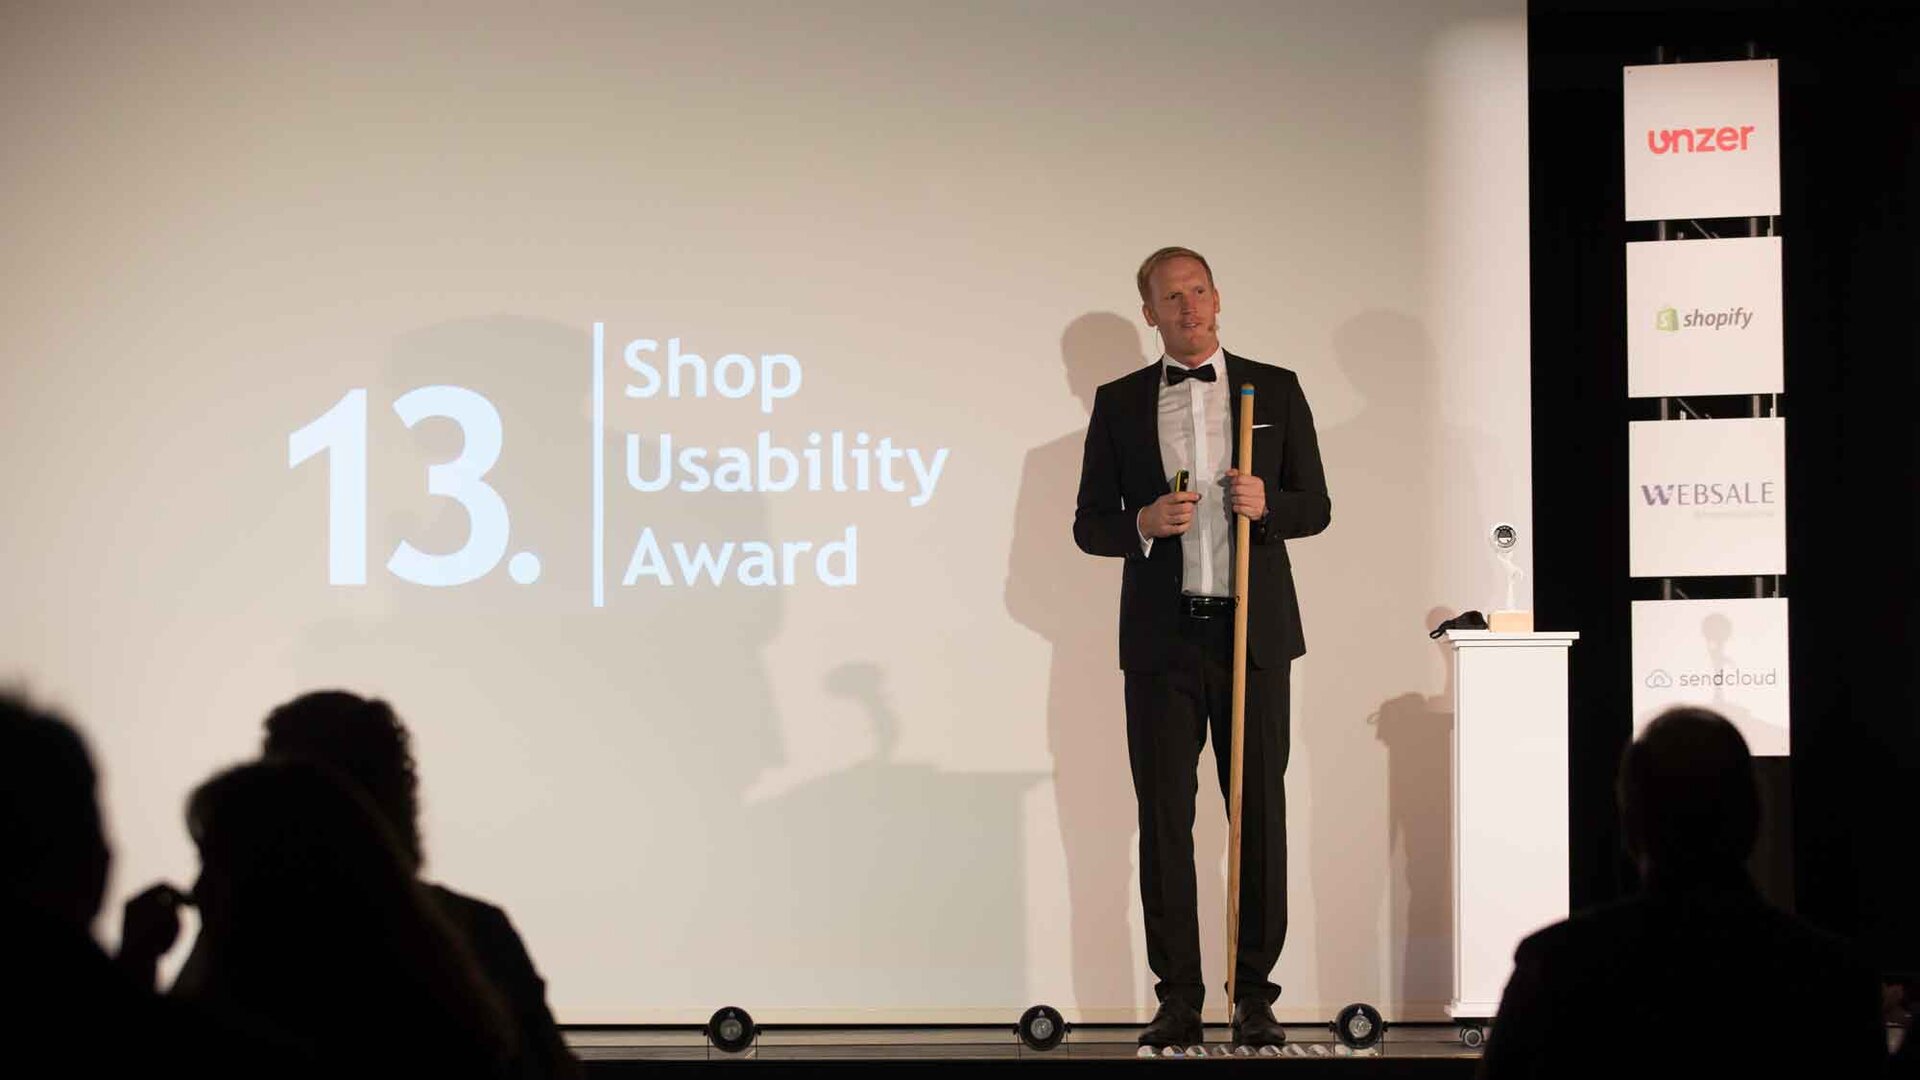 Live im heimischen Wohnzimmer: Johannes Altmann als galanter Moderator der Shop Usability Award Gala 2020